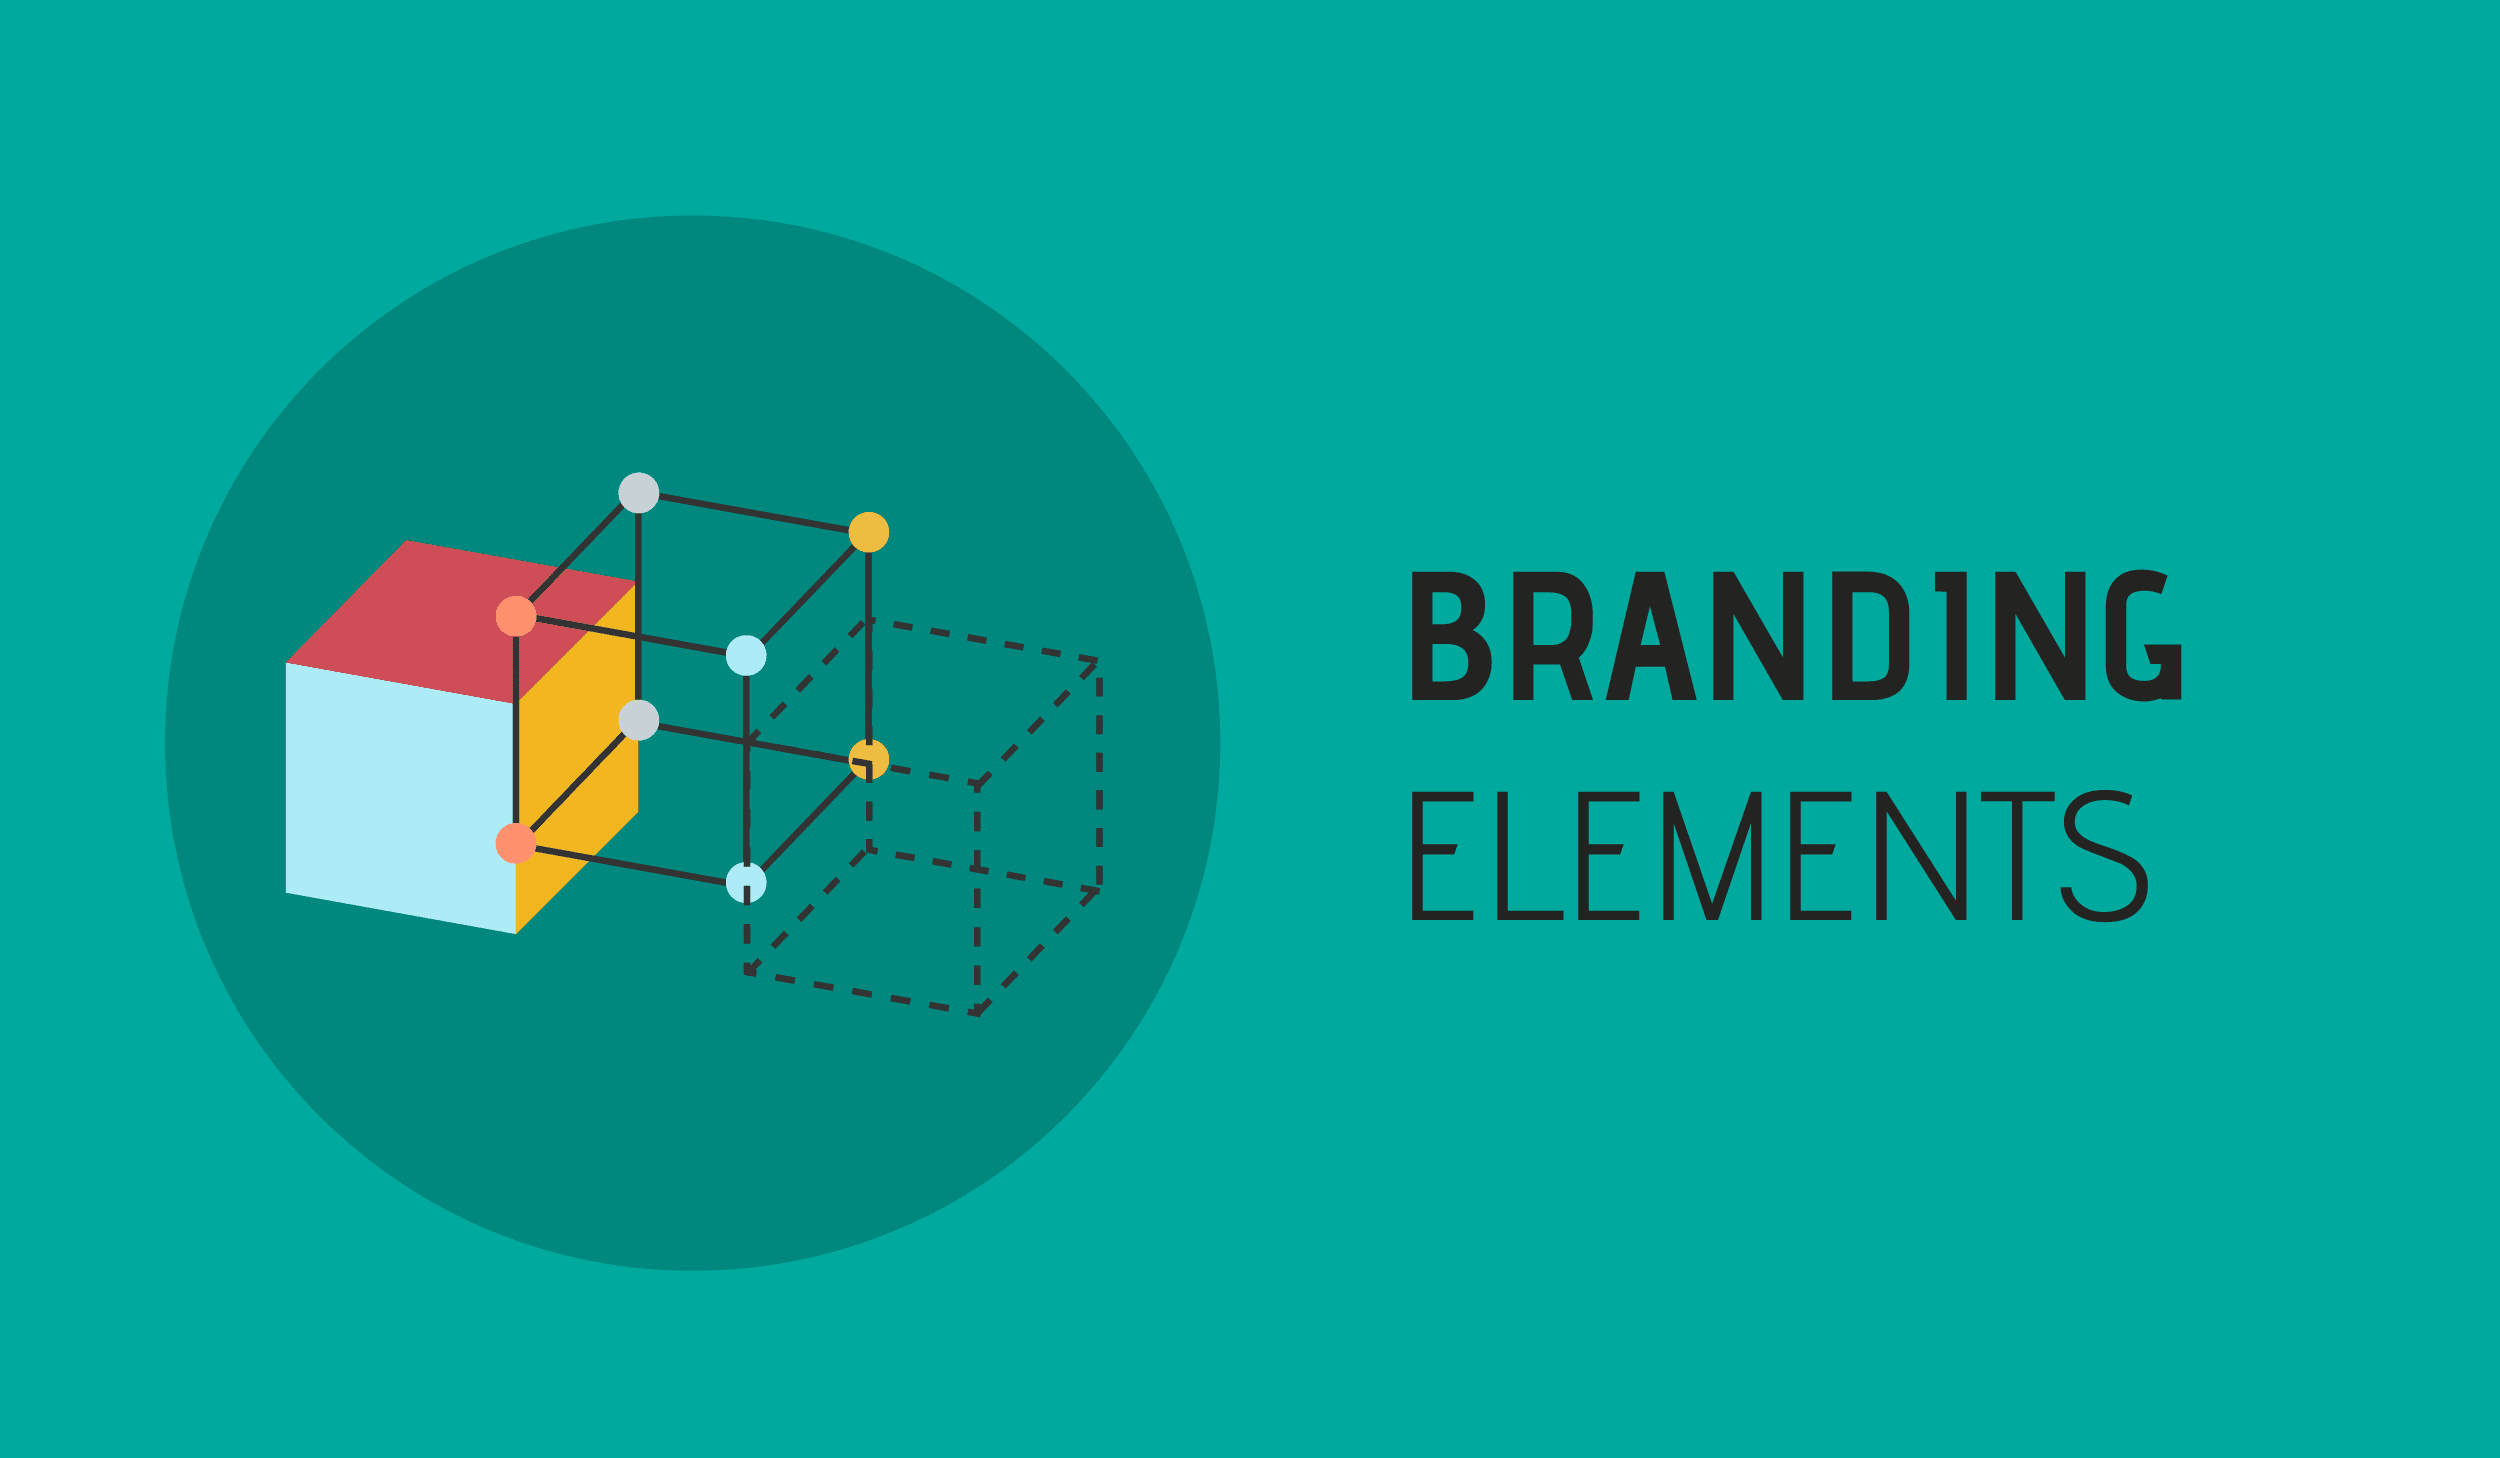 brand element definition